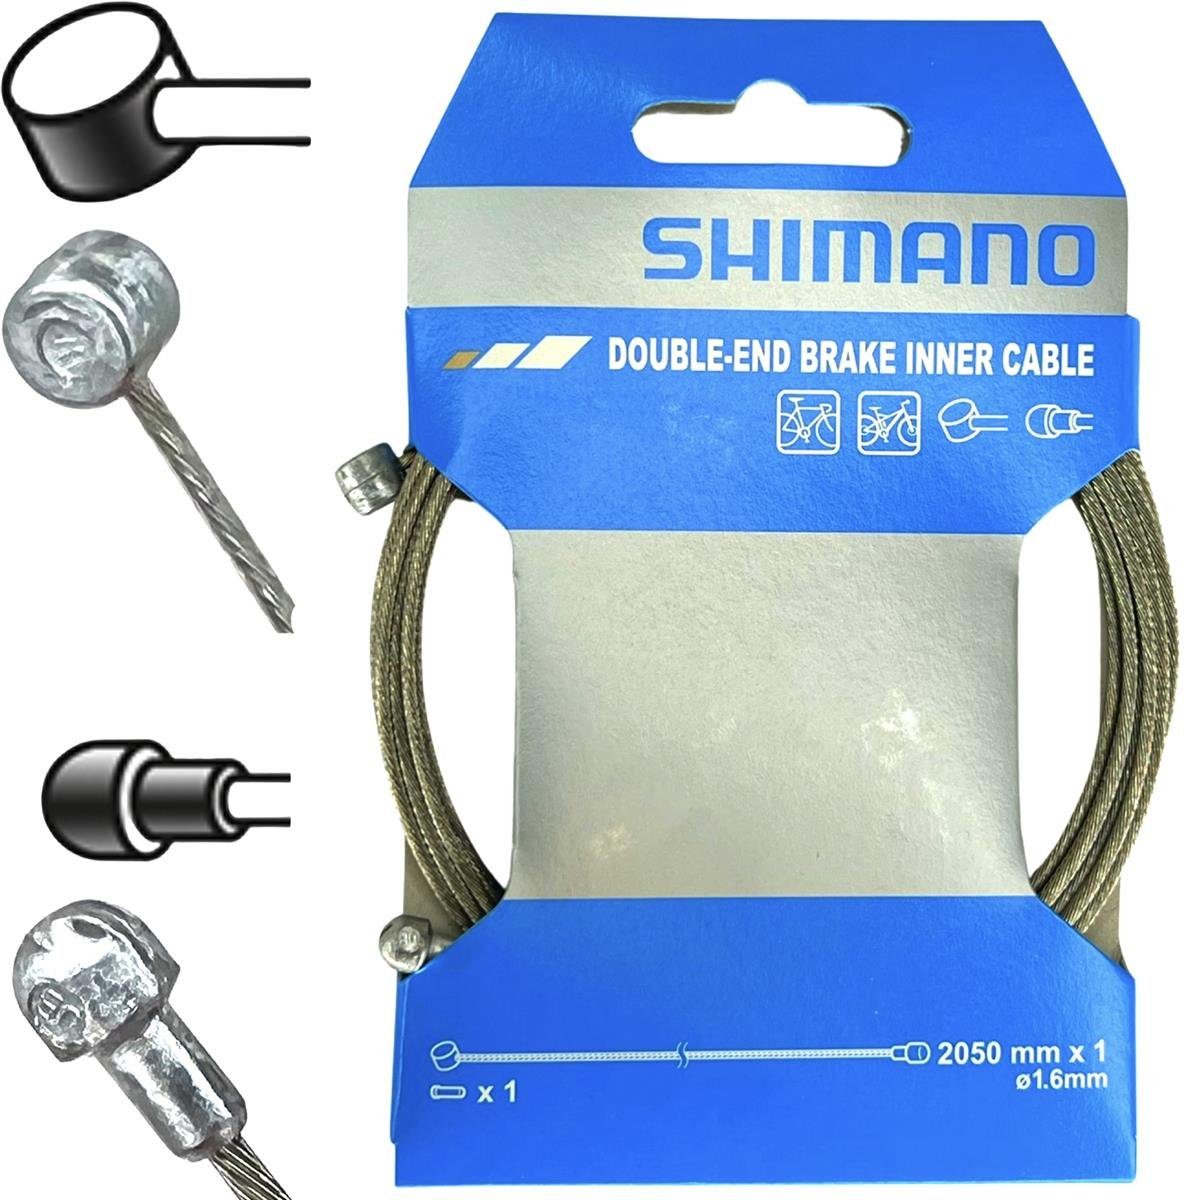 Shimano Felgenbremse Set Shimano 1m Felgen Universal Bremse SP41 Schaltung / SLR Außenhülle Bremszug